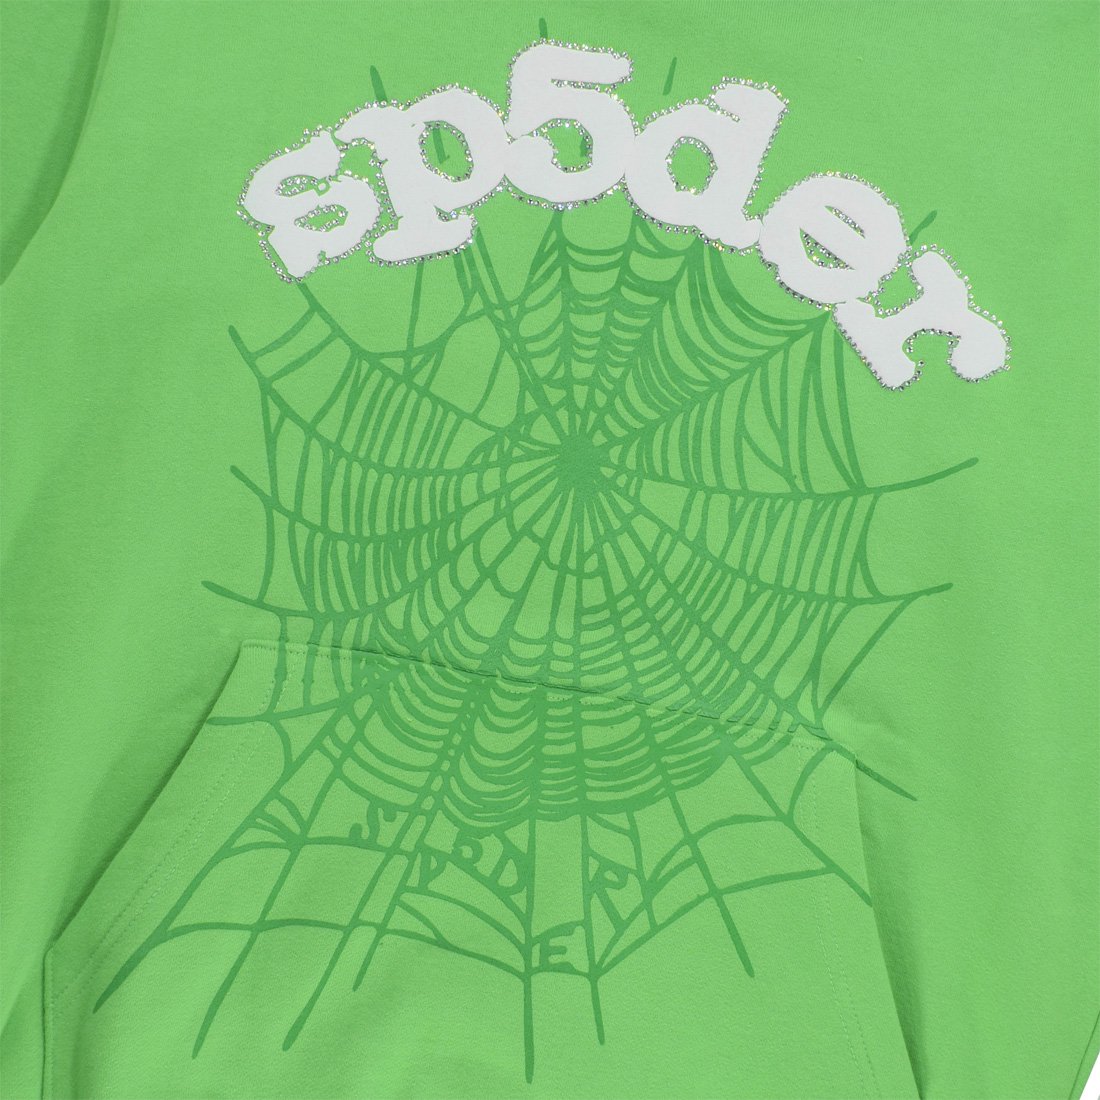 SPIDER WORLD WIDE WEB SUIT HOODIE - Spyder｜セレクトショップ｜茨城 